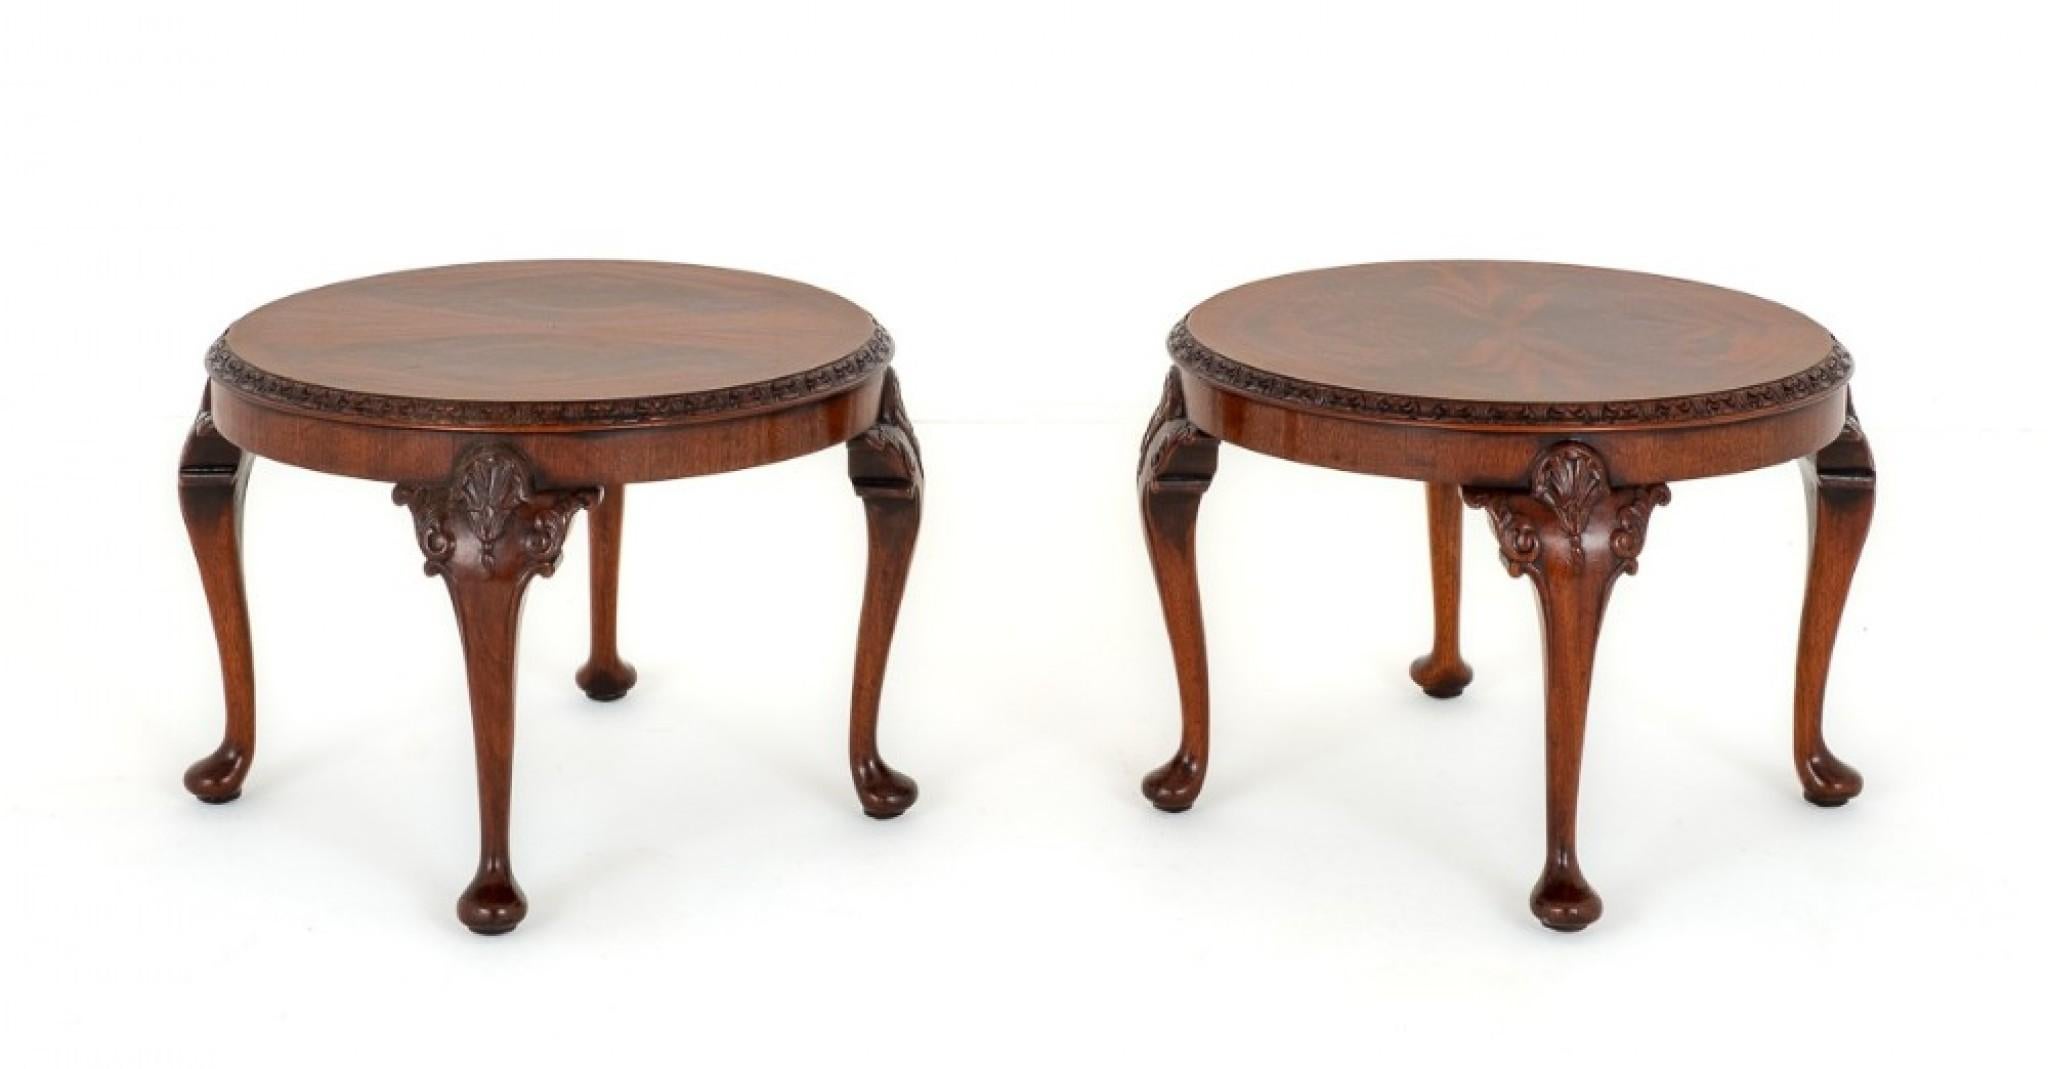 Hier haben wir eine schöne Qualität Paar zusammenpassende Chippendale Stil Mahagoni Couchtische.
Um 1930
Jeder Tisch steht auf Cabriole Beinen mit pad Füßen mit geschnitzten Muscheln und Rollen an den Knien.
Die Tischplatten sind mit